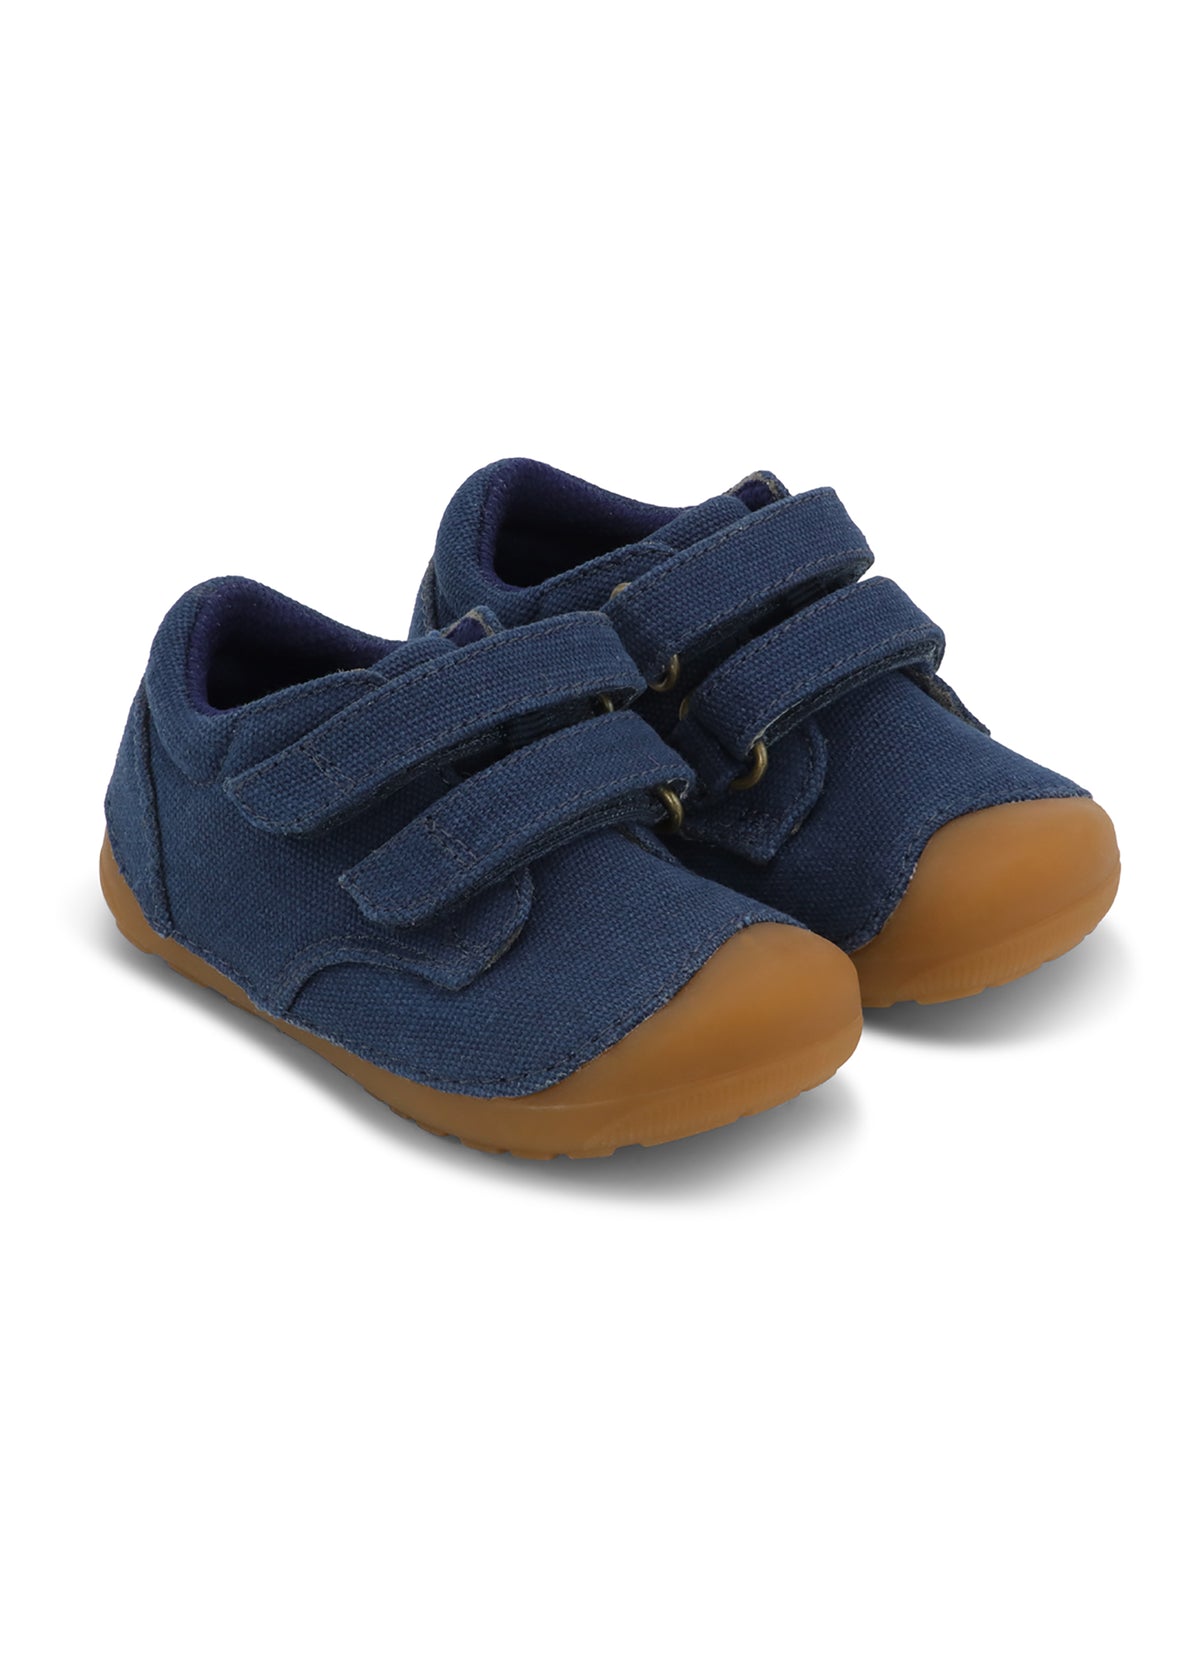 Children's first step shoes - Petit Strap Canvas, Navy, Bundgaard Zero Heel